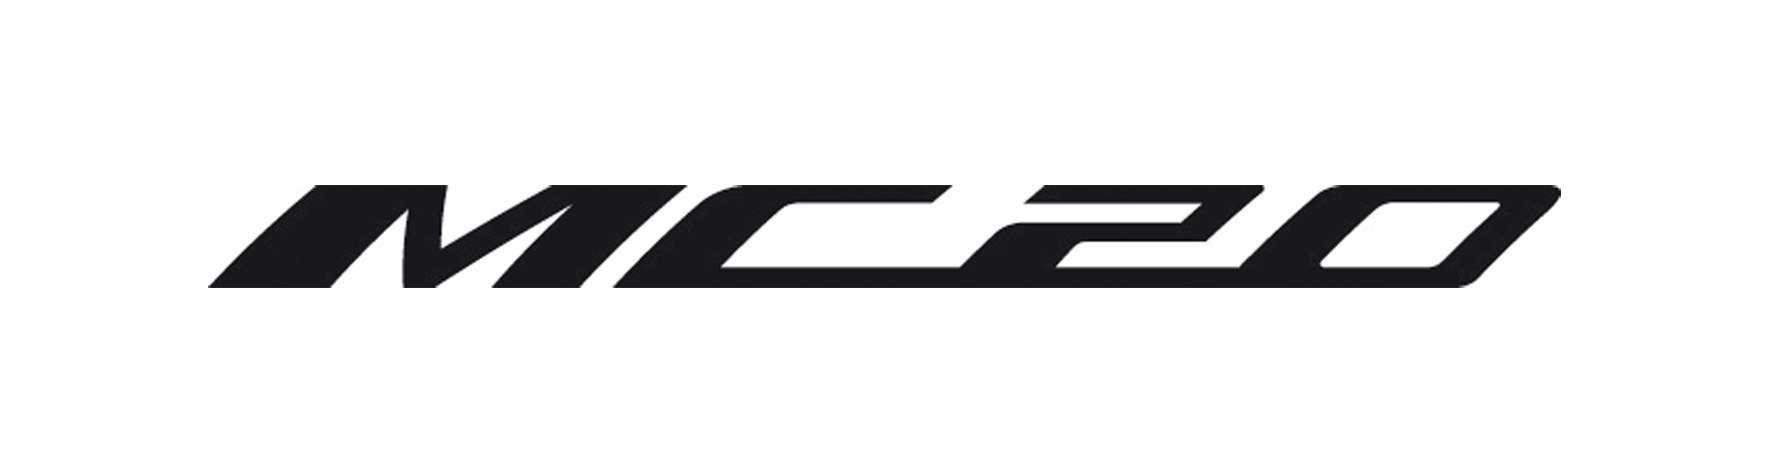 Logo Mc20 Scelto Per La Vela Approvato Ok